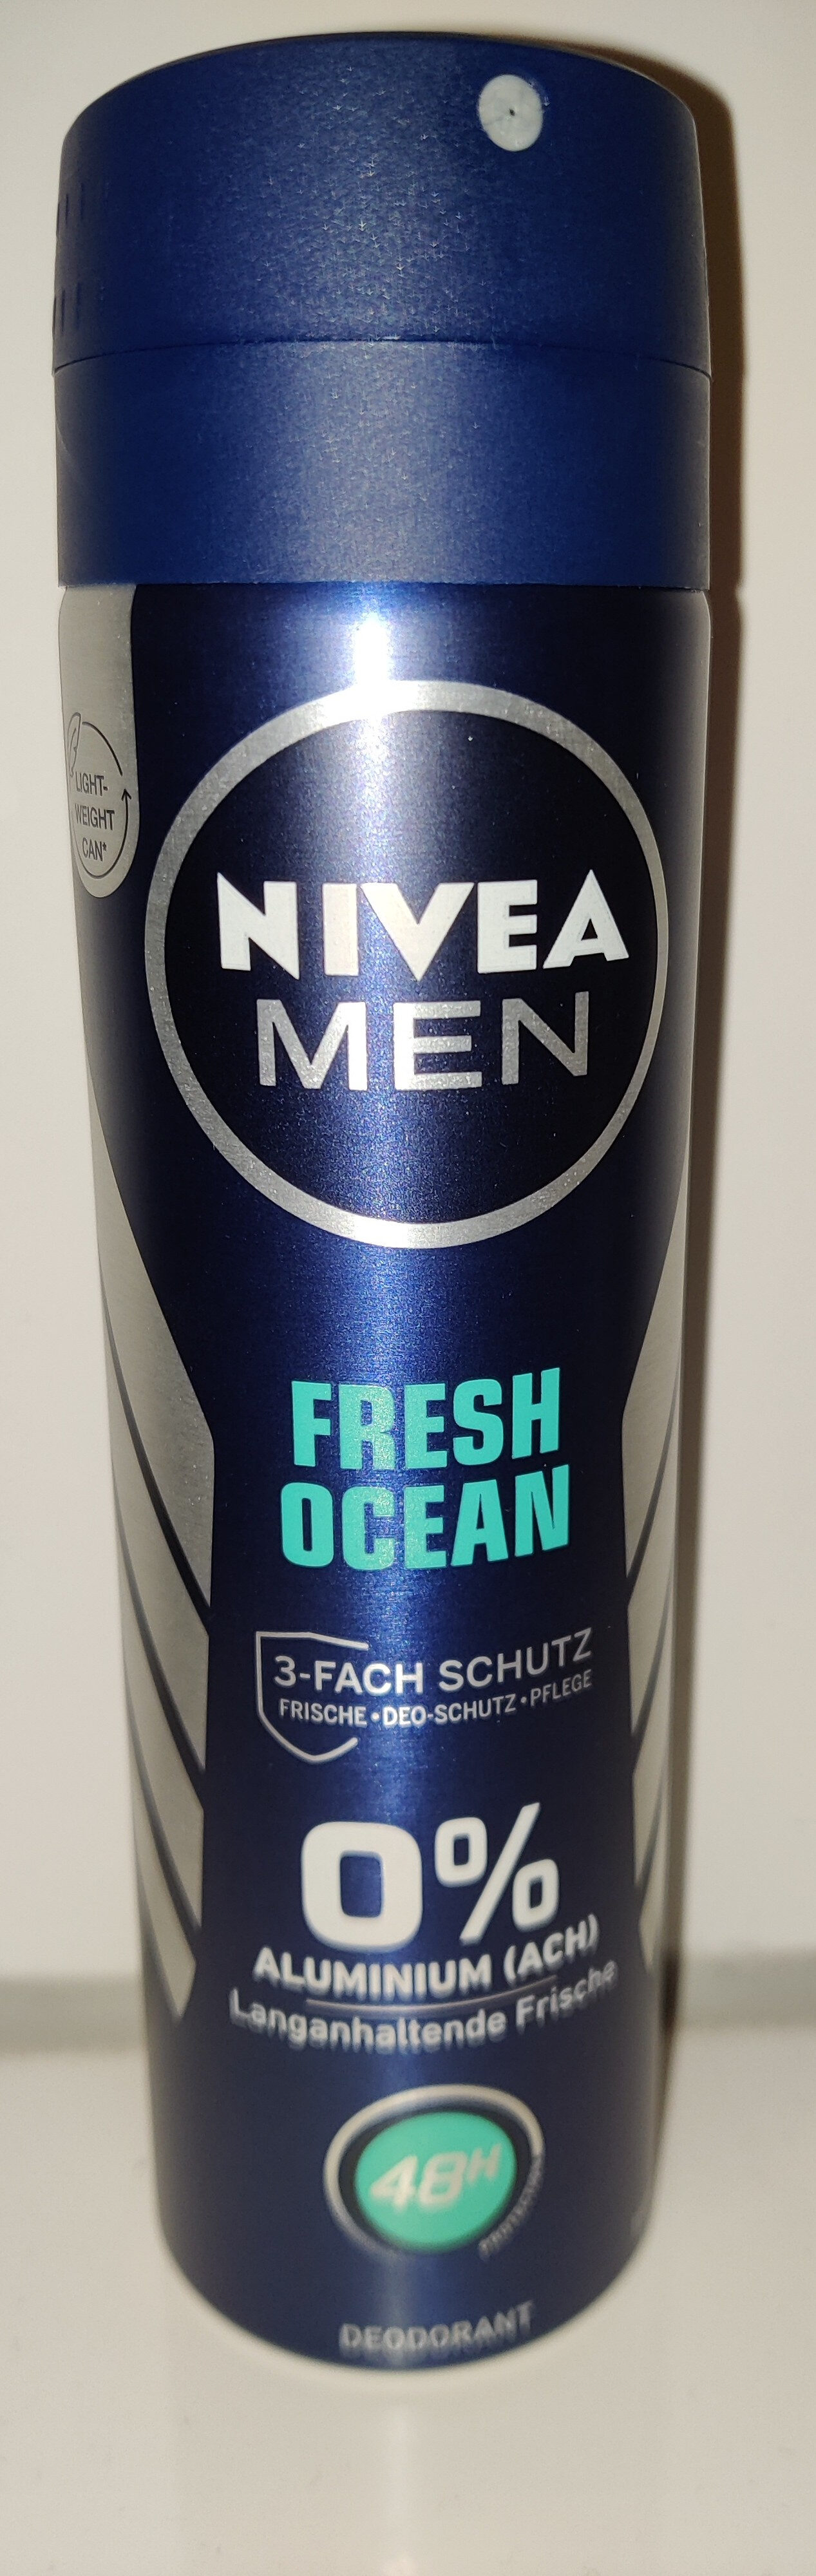 Deodorant Fresh Ocean 3-fach Schutz - Produit - de